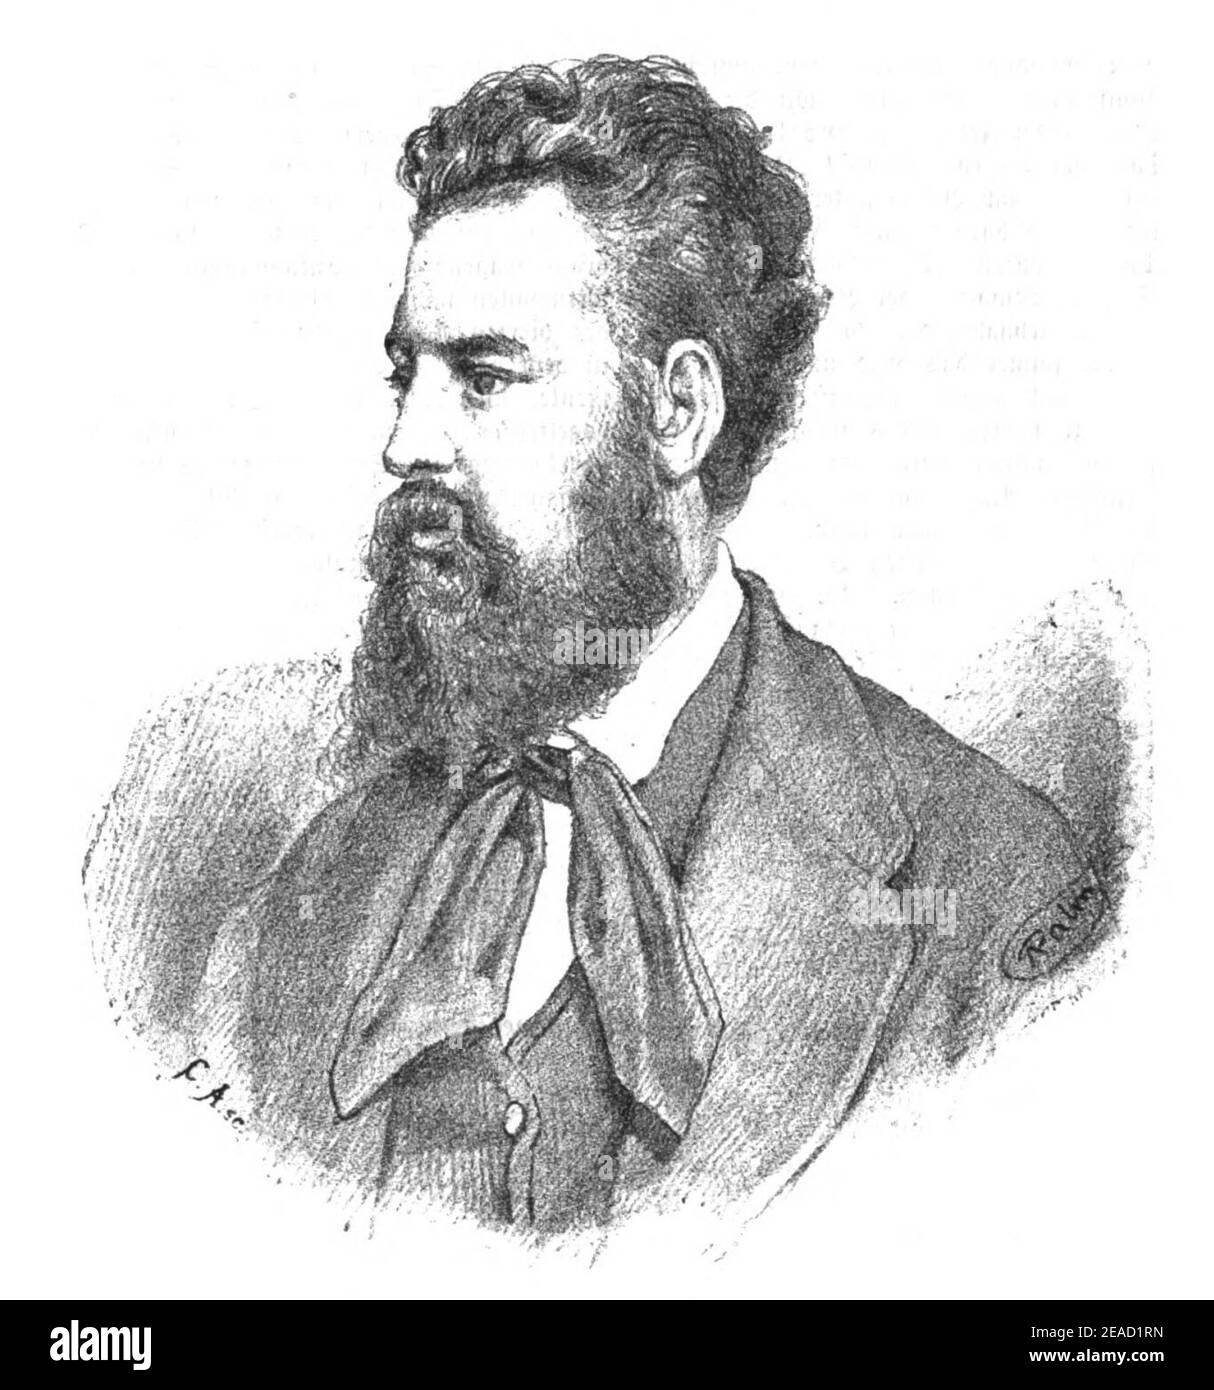 Nicolaus Dumba, 1873 Stock Photo - Alamy